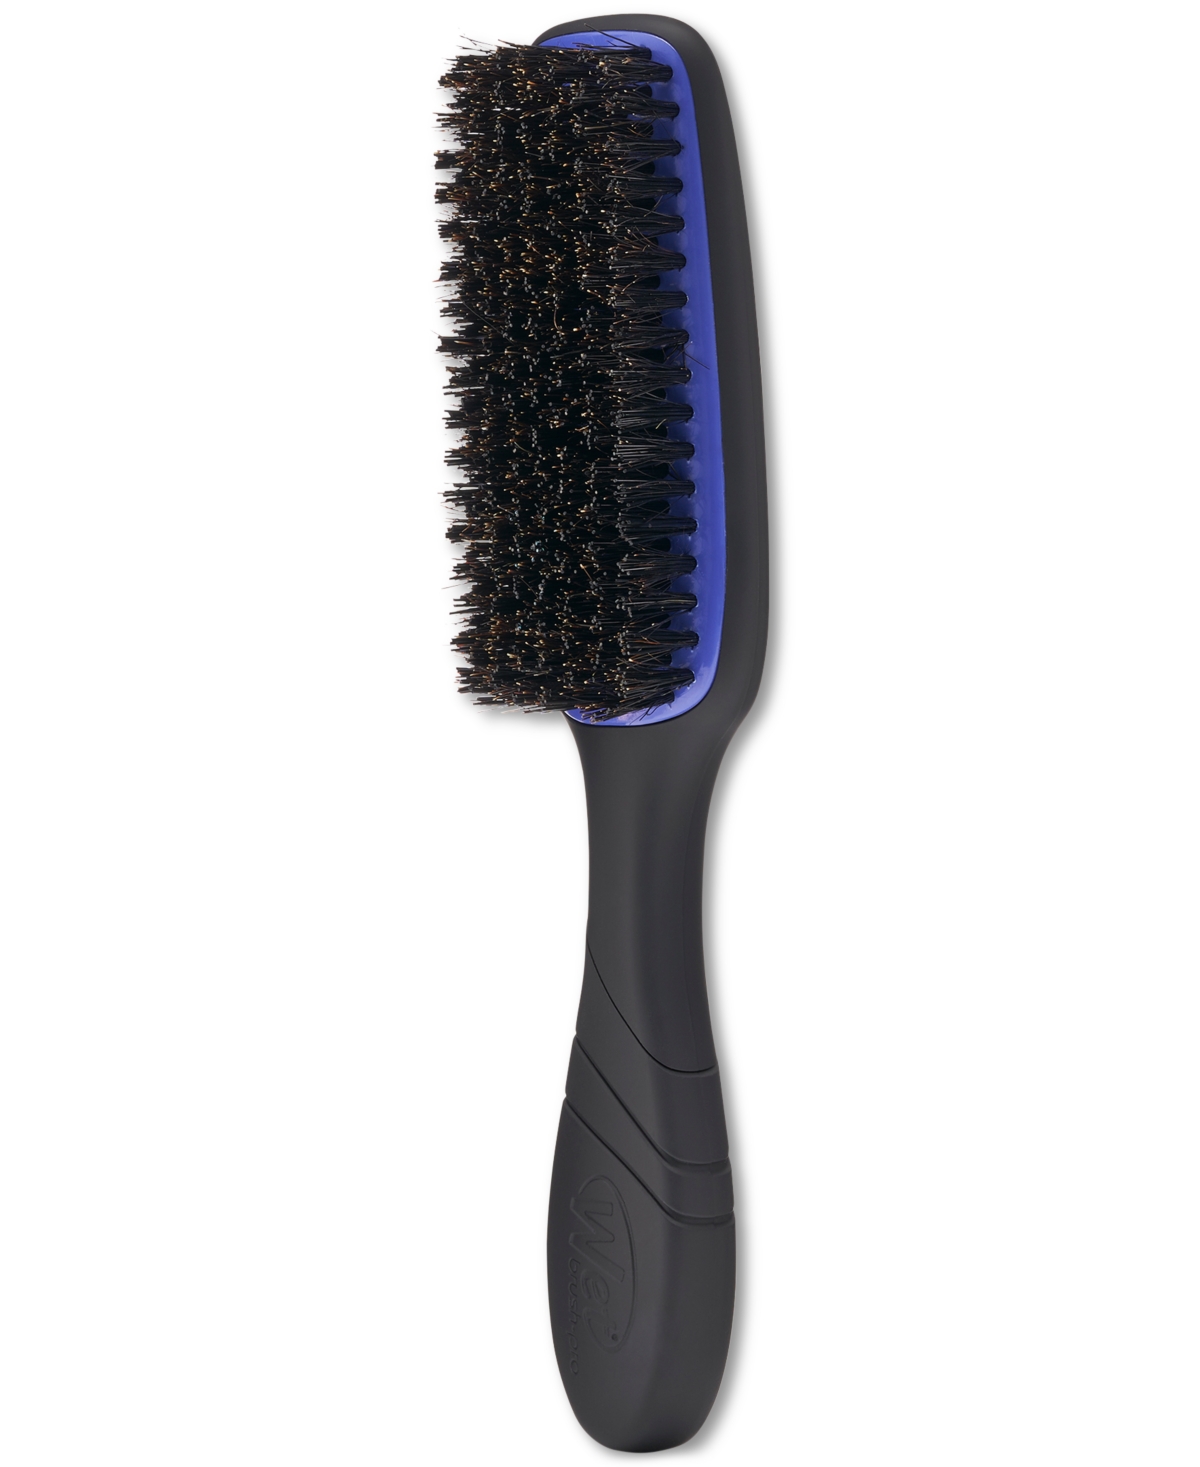 Pro Smoothing Brush - Black/purple